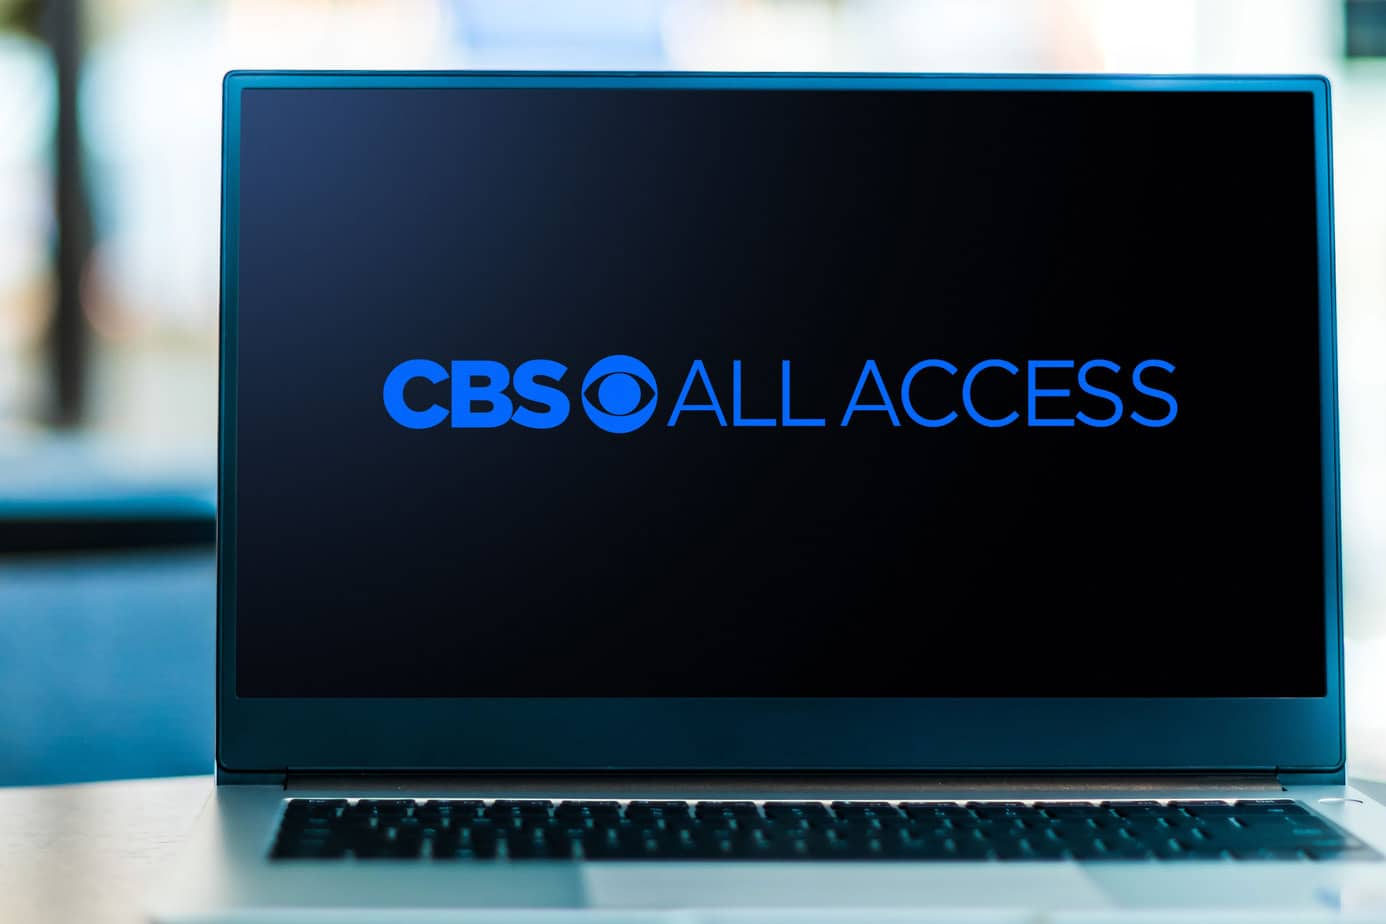 cbs all access parental controls - cbs all access home screen on a desktop computer